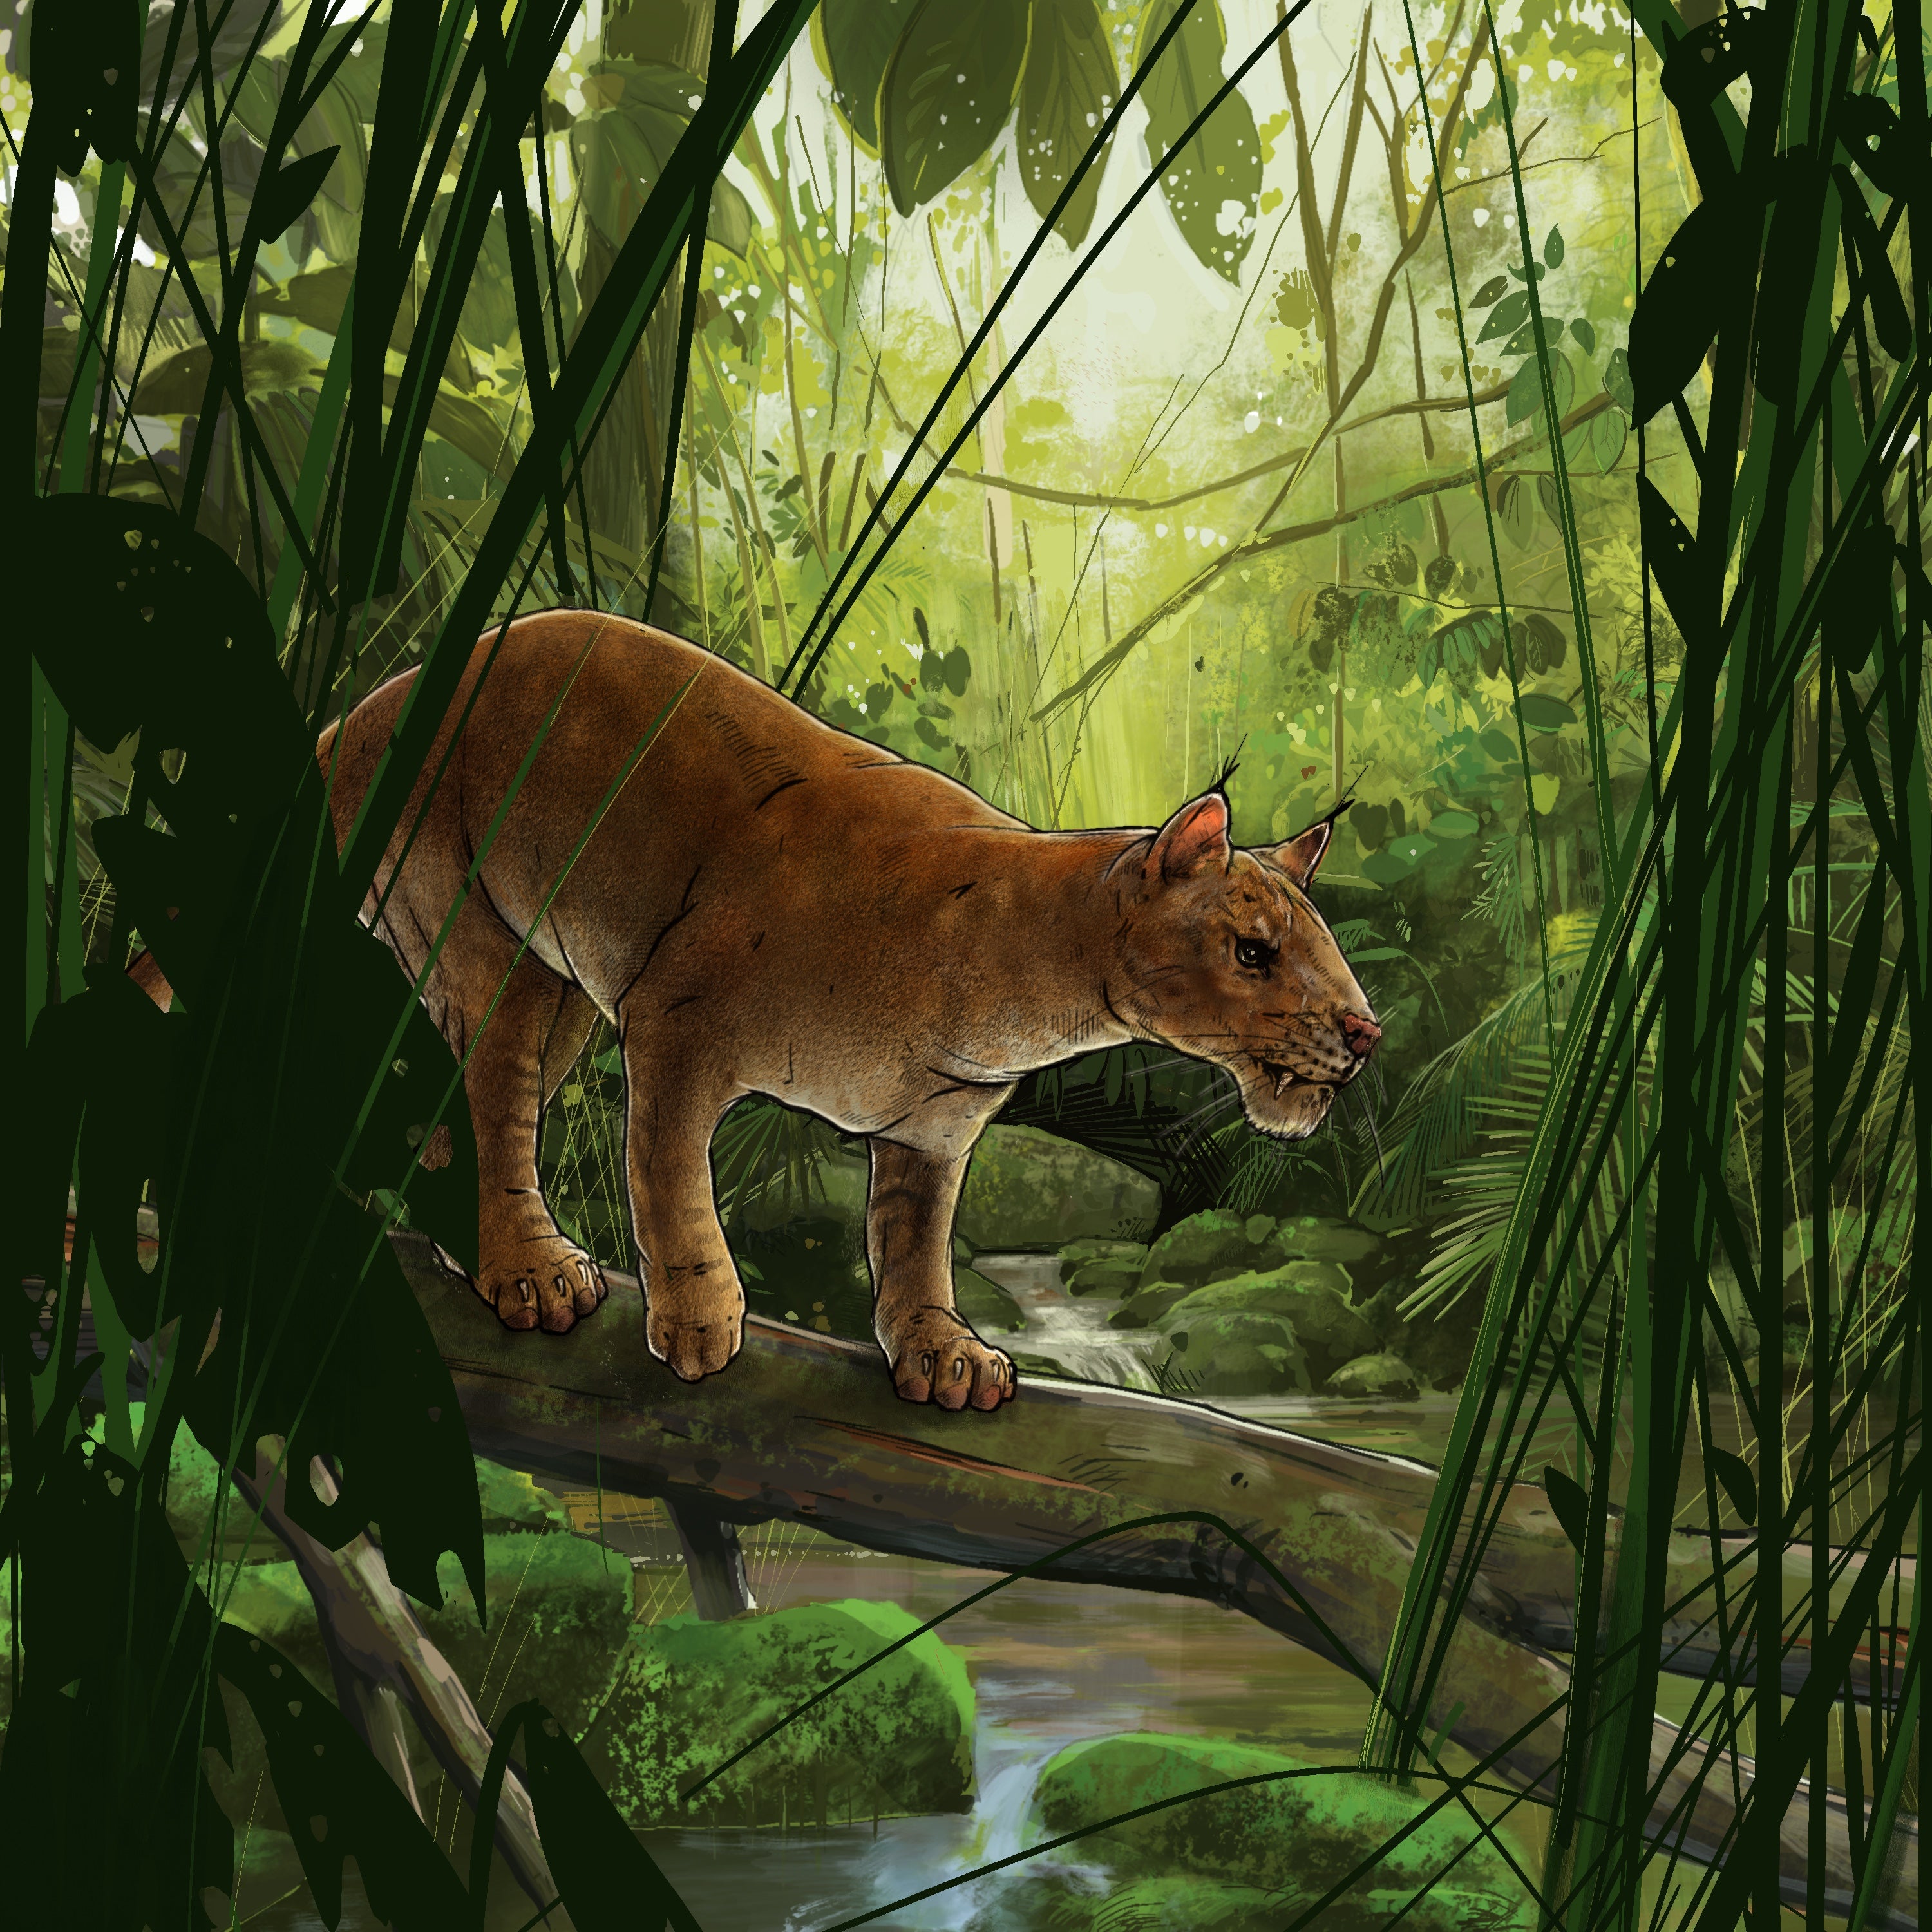 An artist’s rendering of the Diegoaelurus vanvalkenburghae, which lived around 42 million years ago.